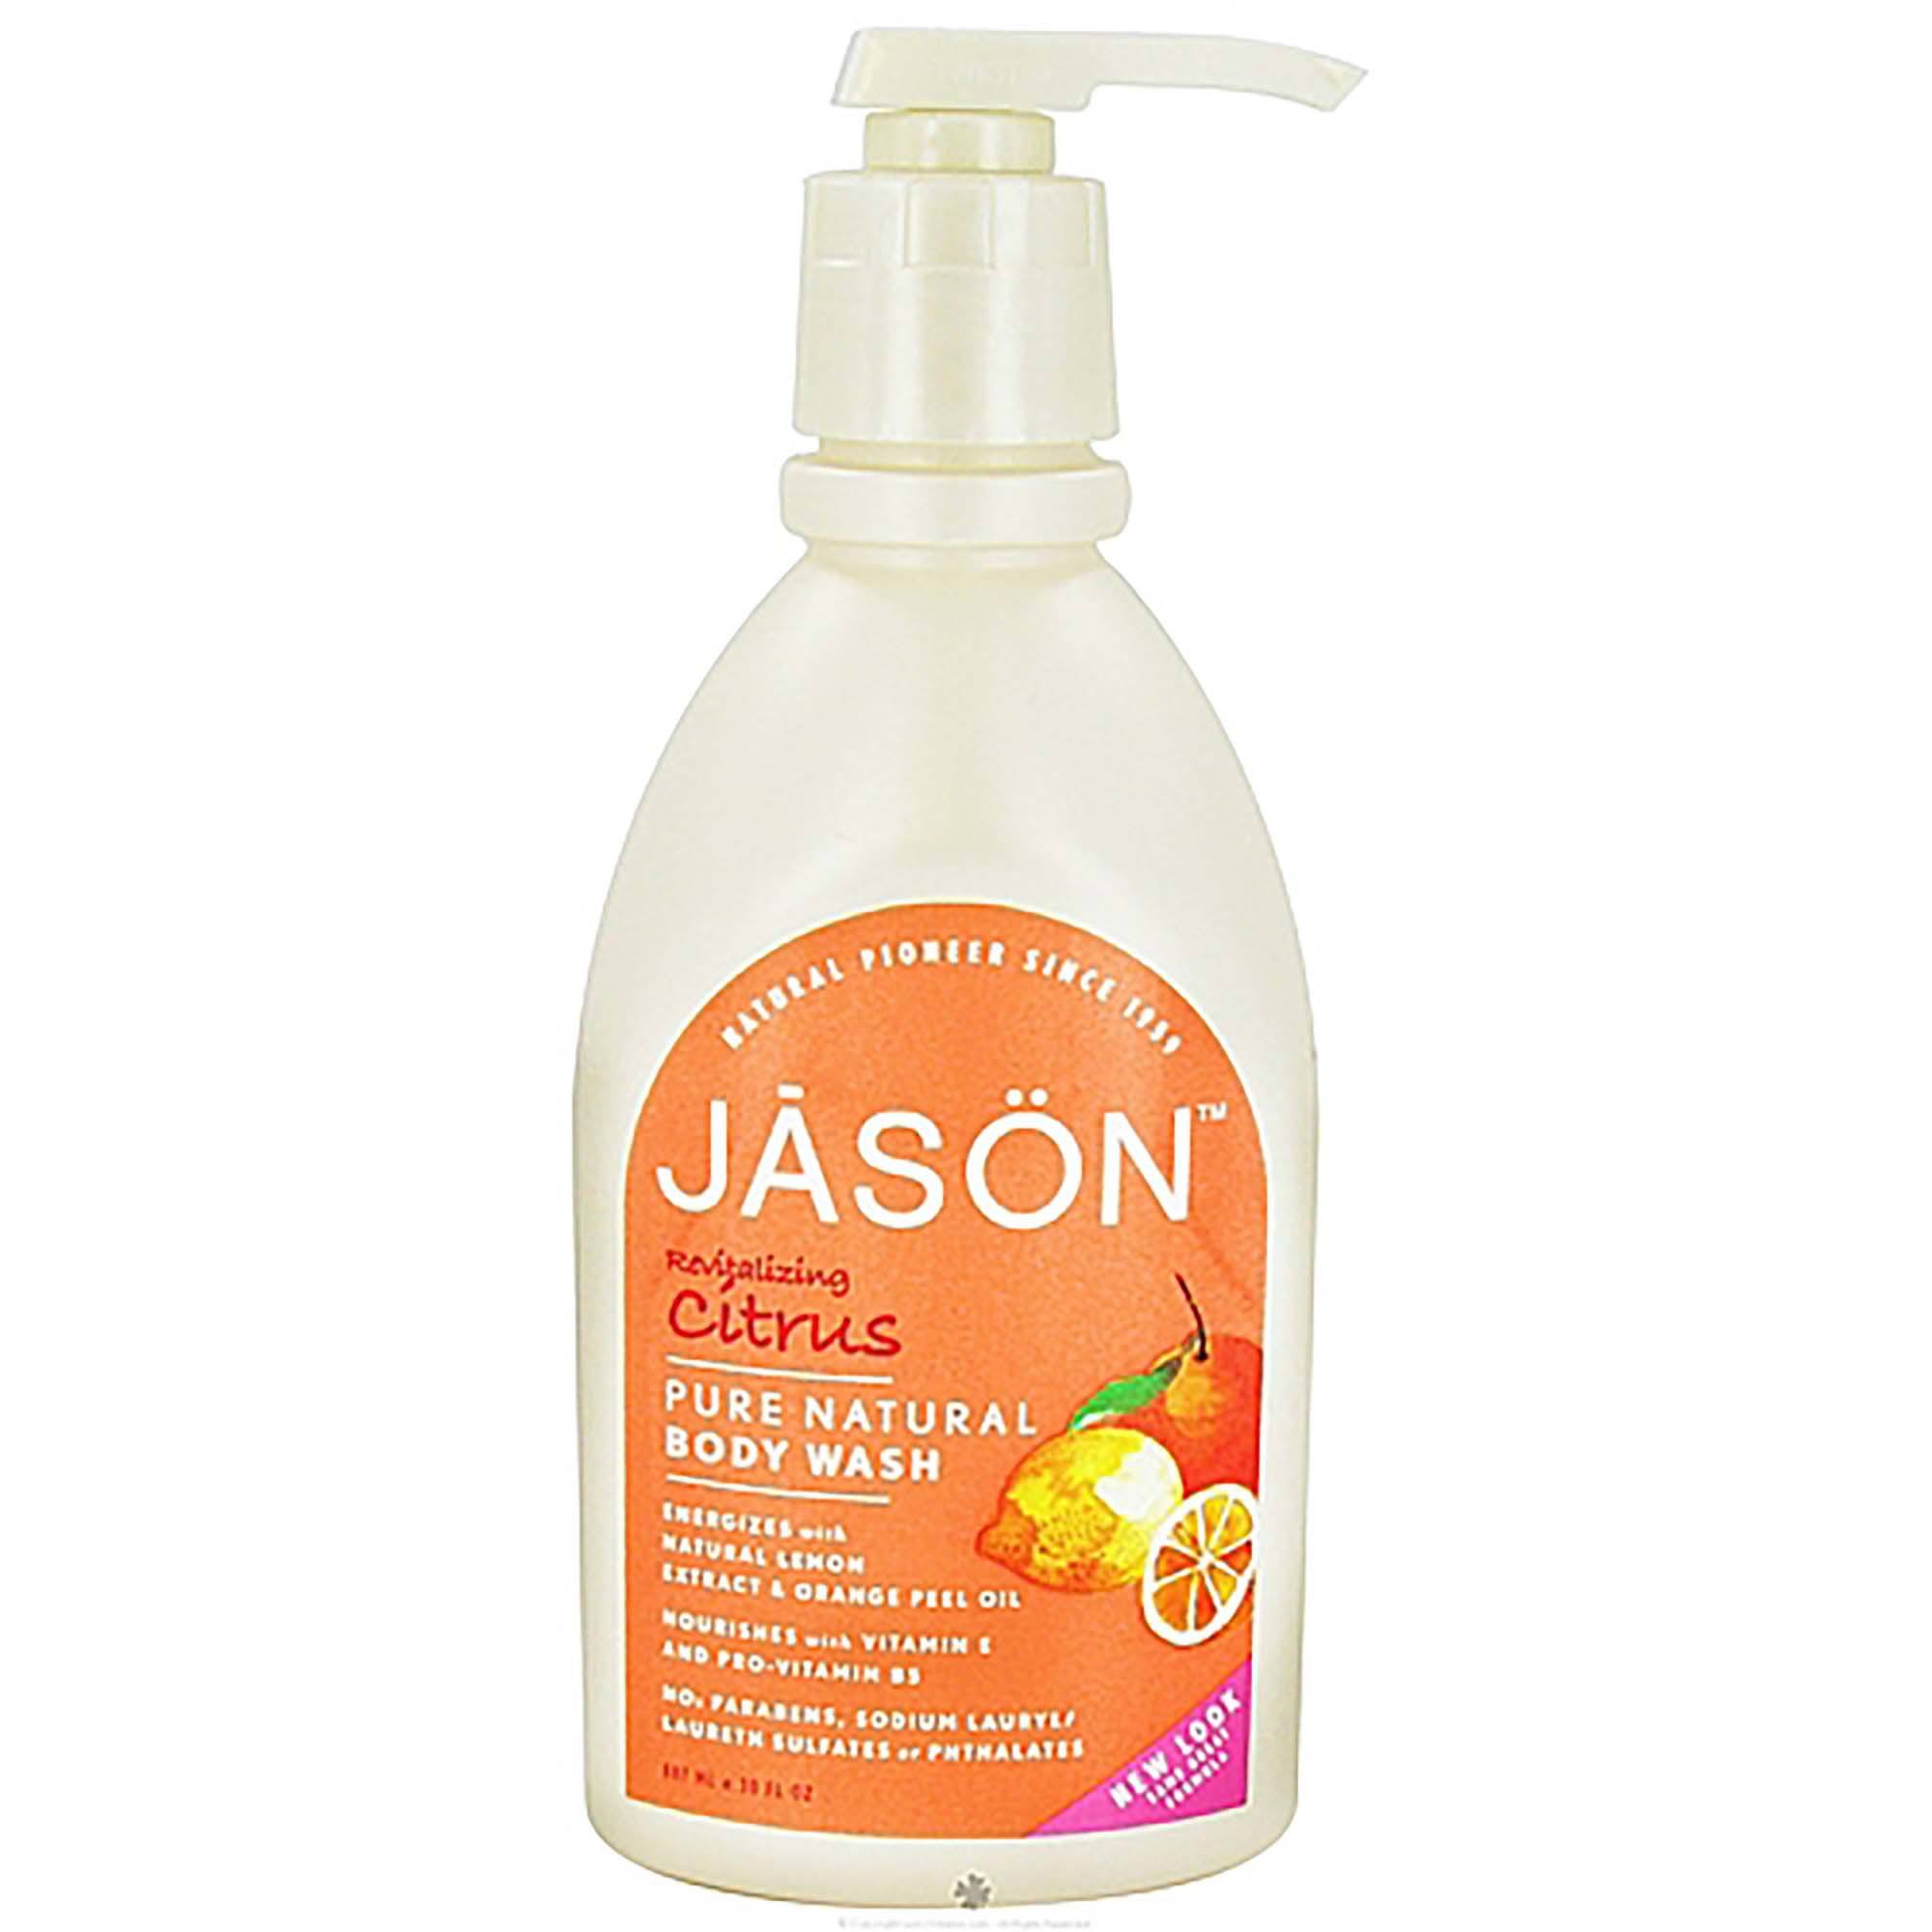 Jason Body Wash - Citrus